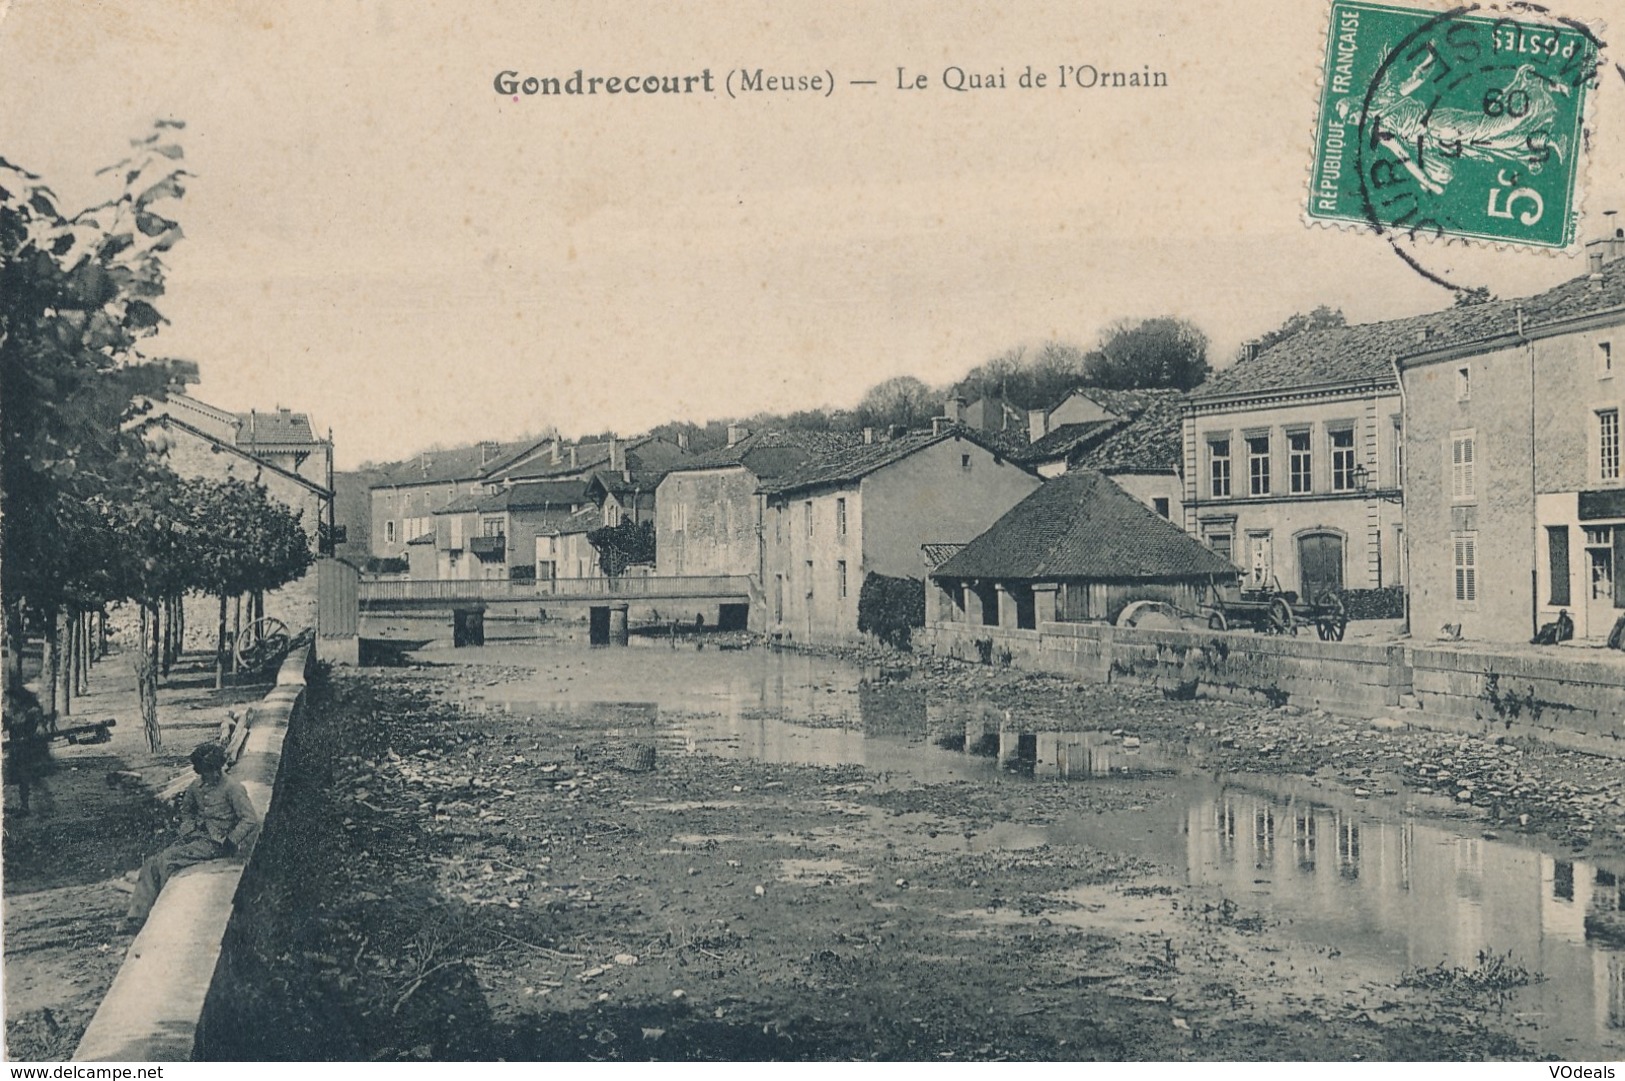 CPA - France - (55) Meuse - Gondrecourt - Le Quai De L'Ornain - Gondrecourt Le Chateau